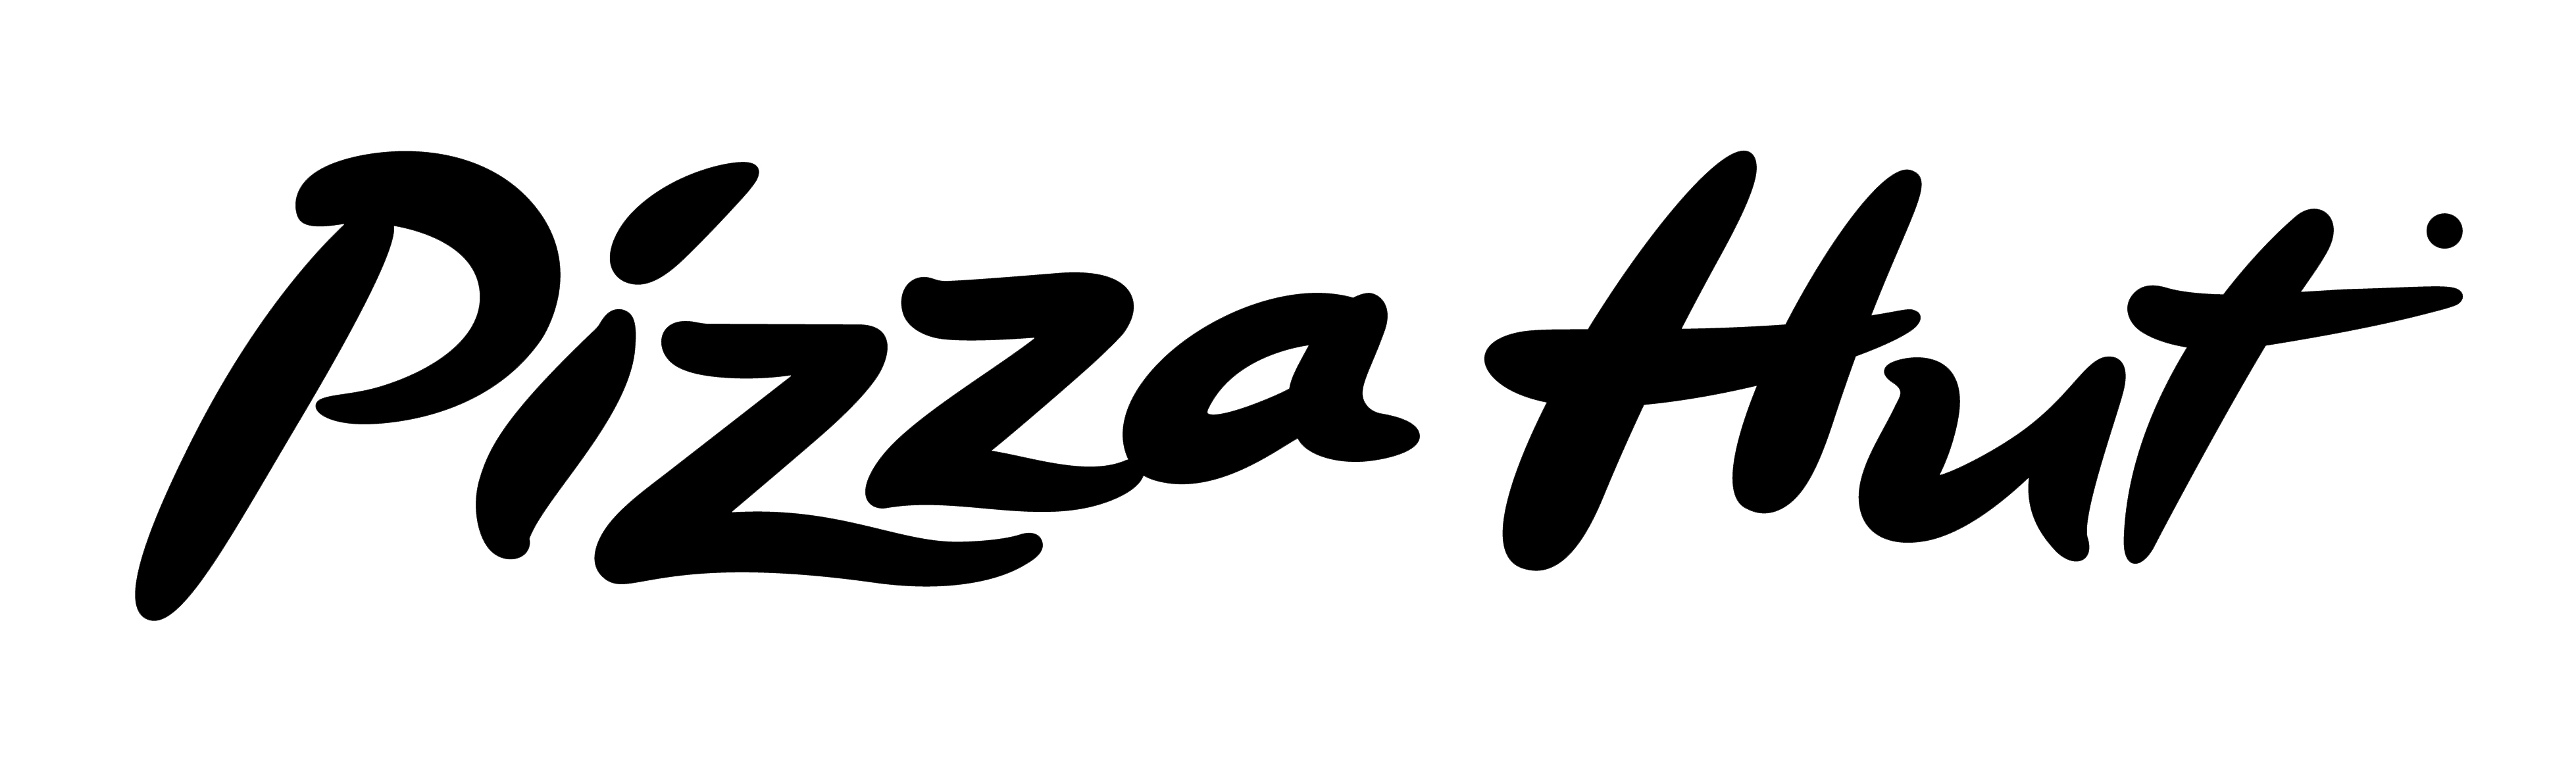 Pizza Hut Logo PNG - 178861